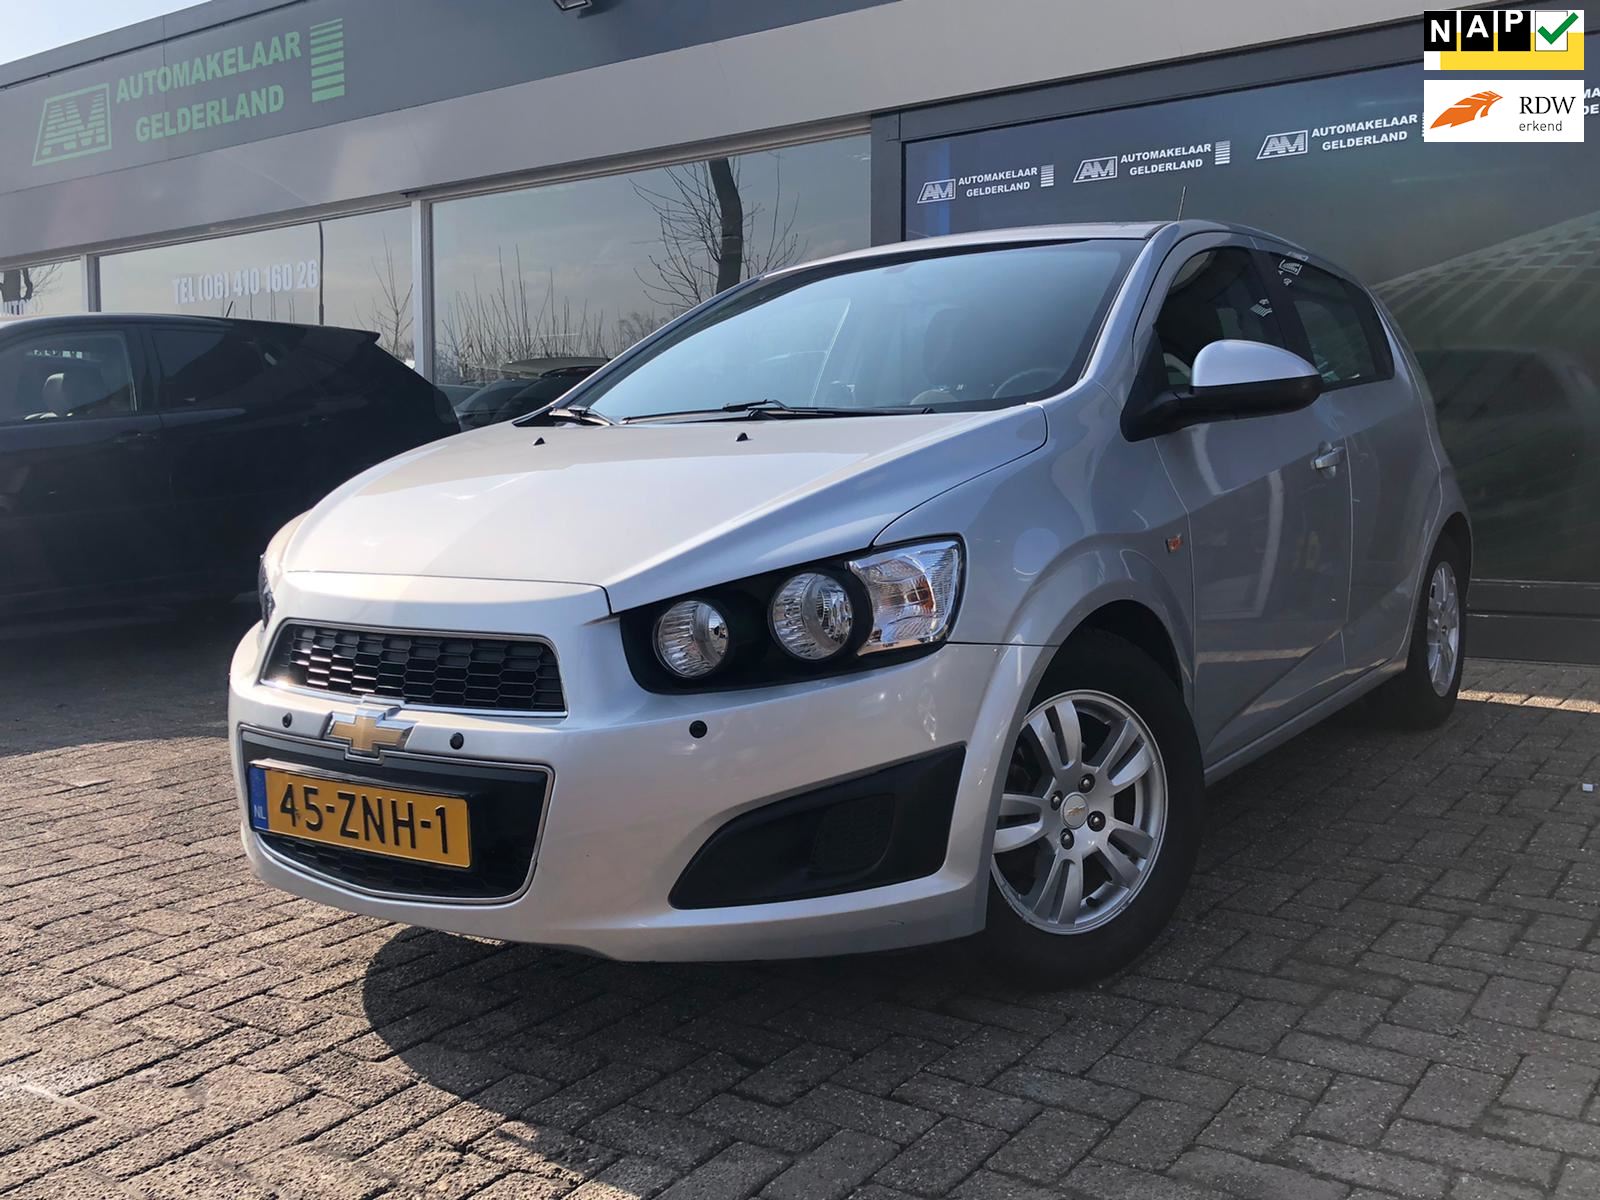 Chevrolet Aveo occasion - De Automakelaar Gelderland